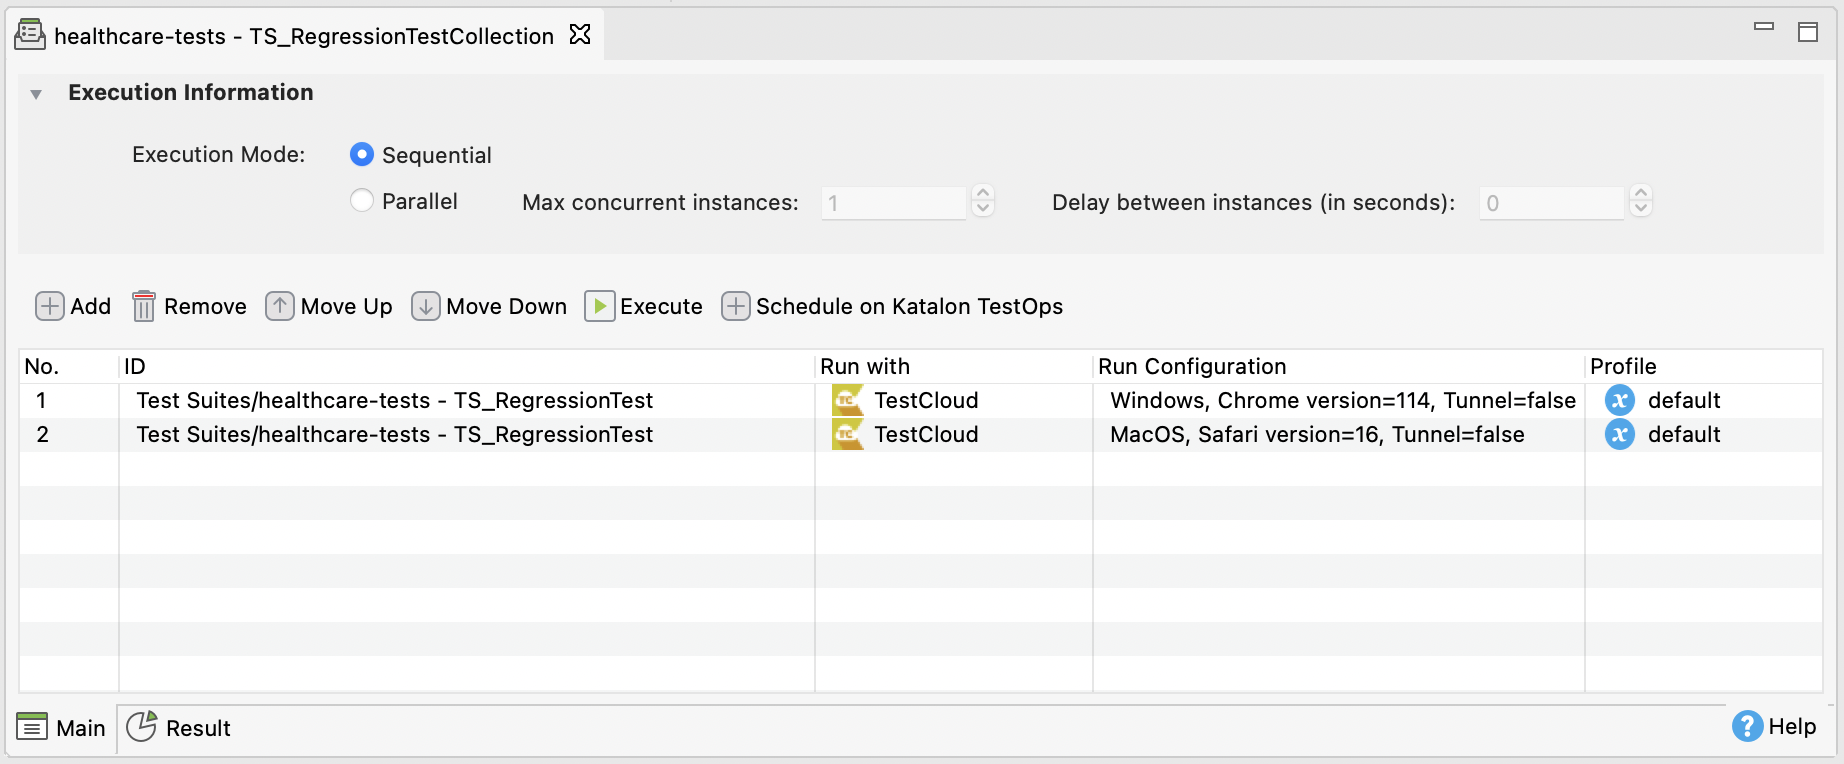 KS test suite collection run configuration